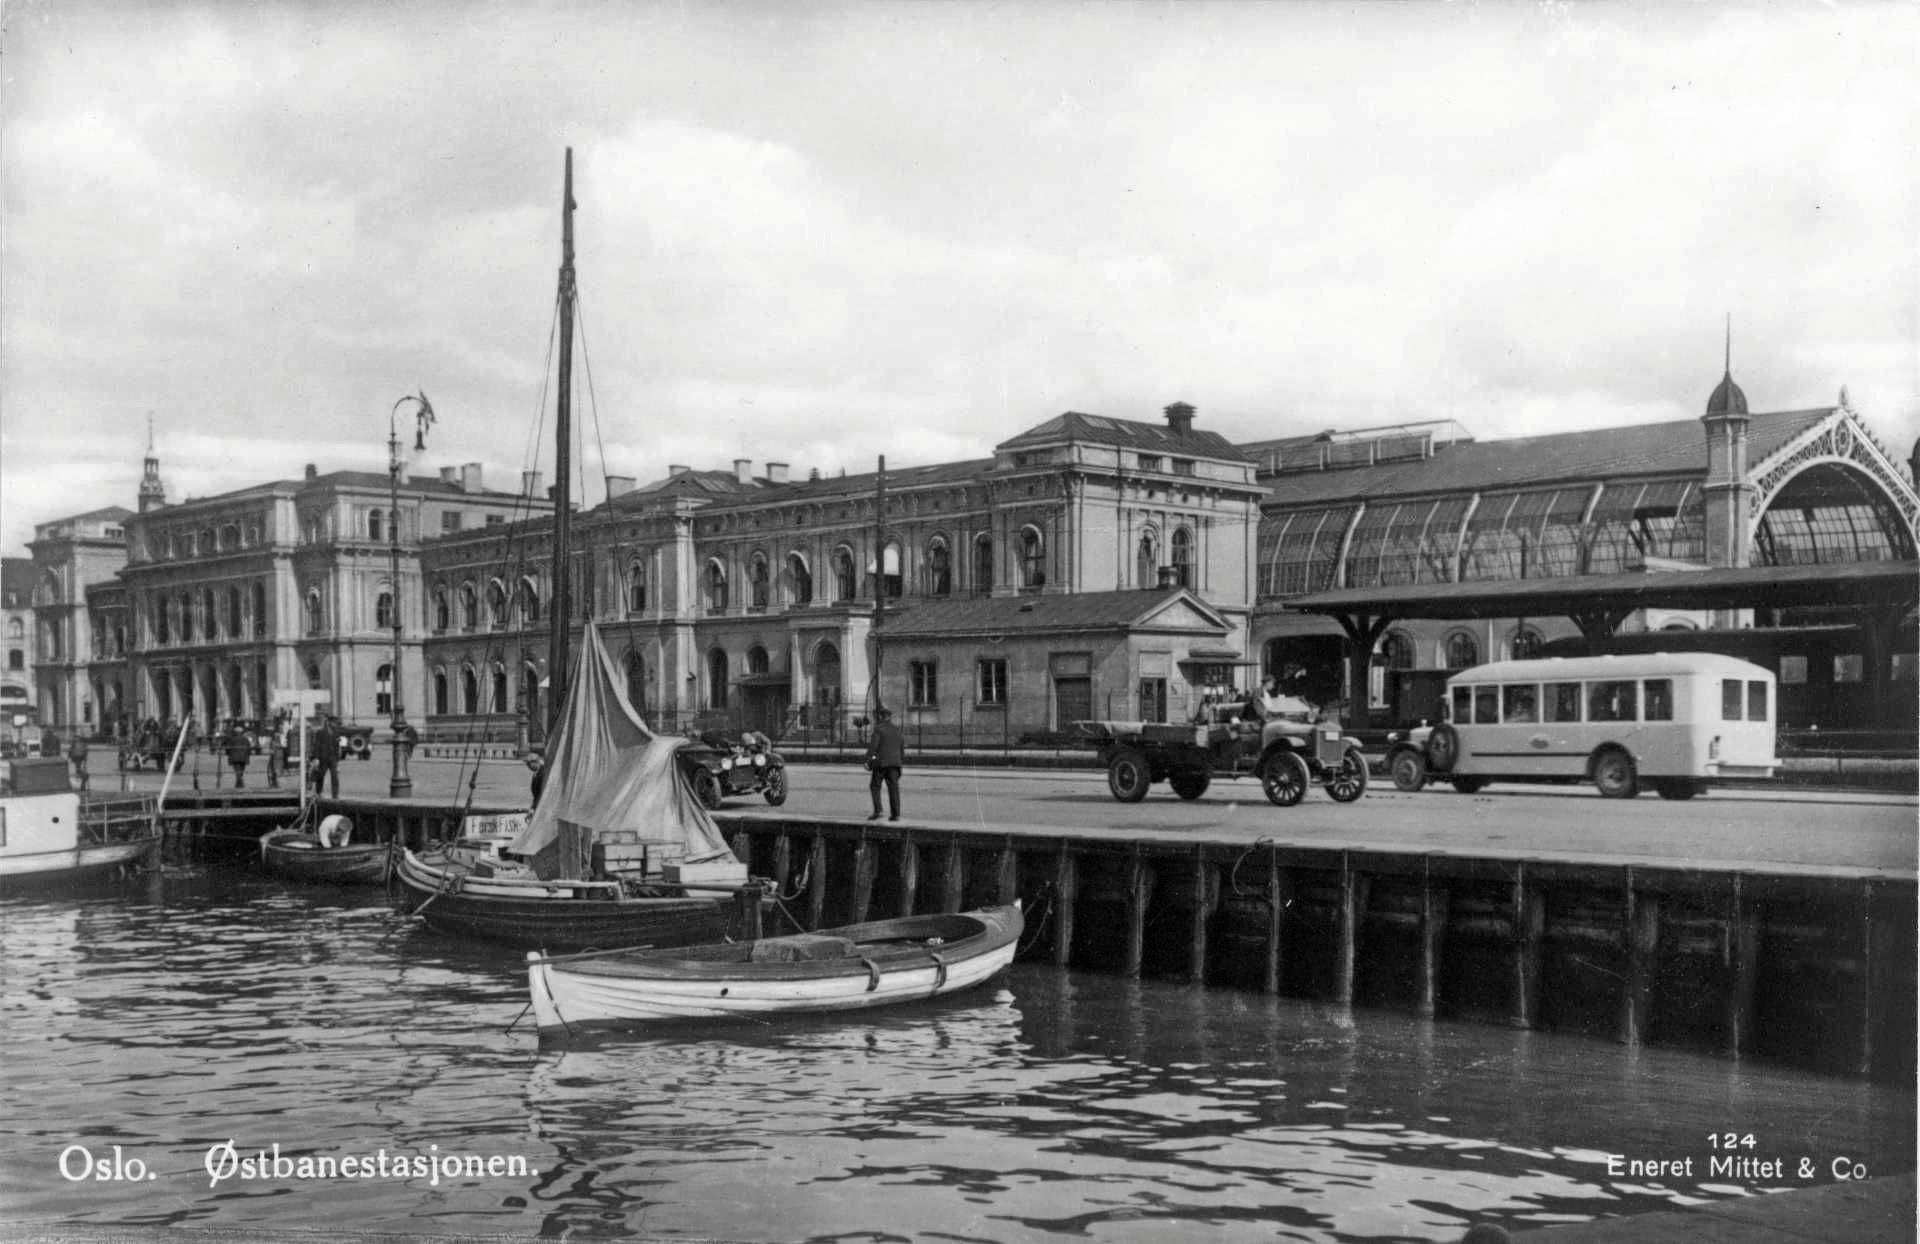 Østbanestasjonens sjøside, ca 1930.